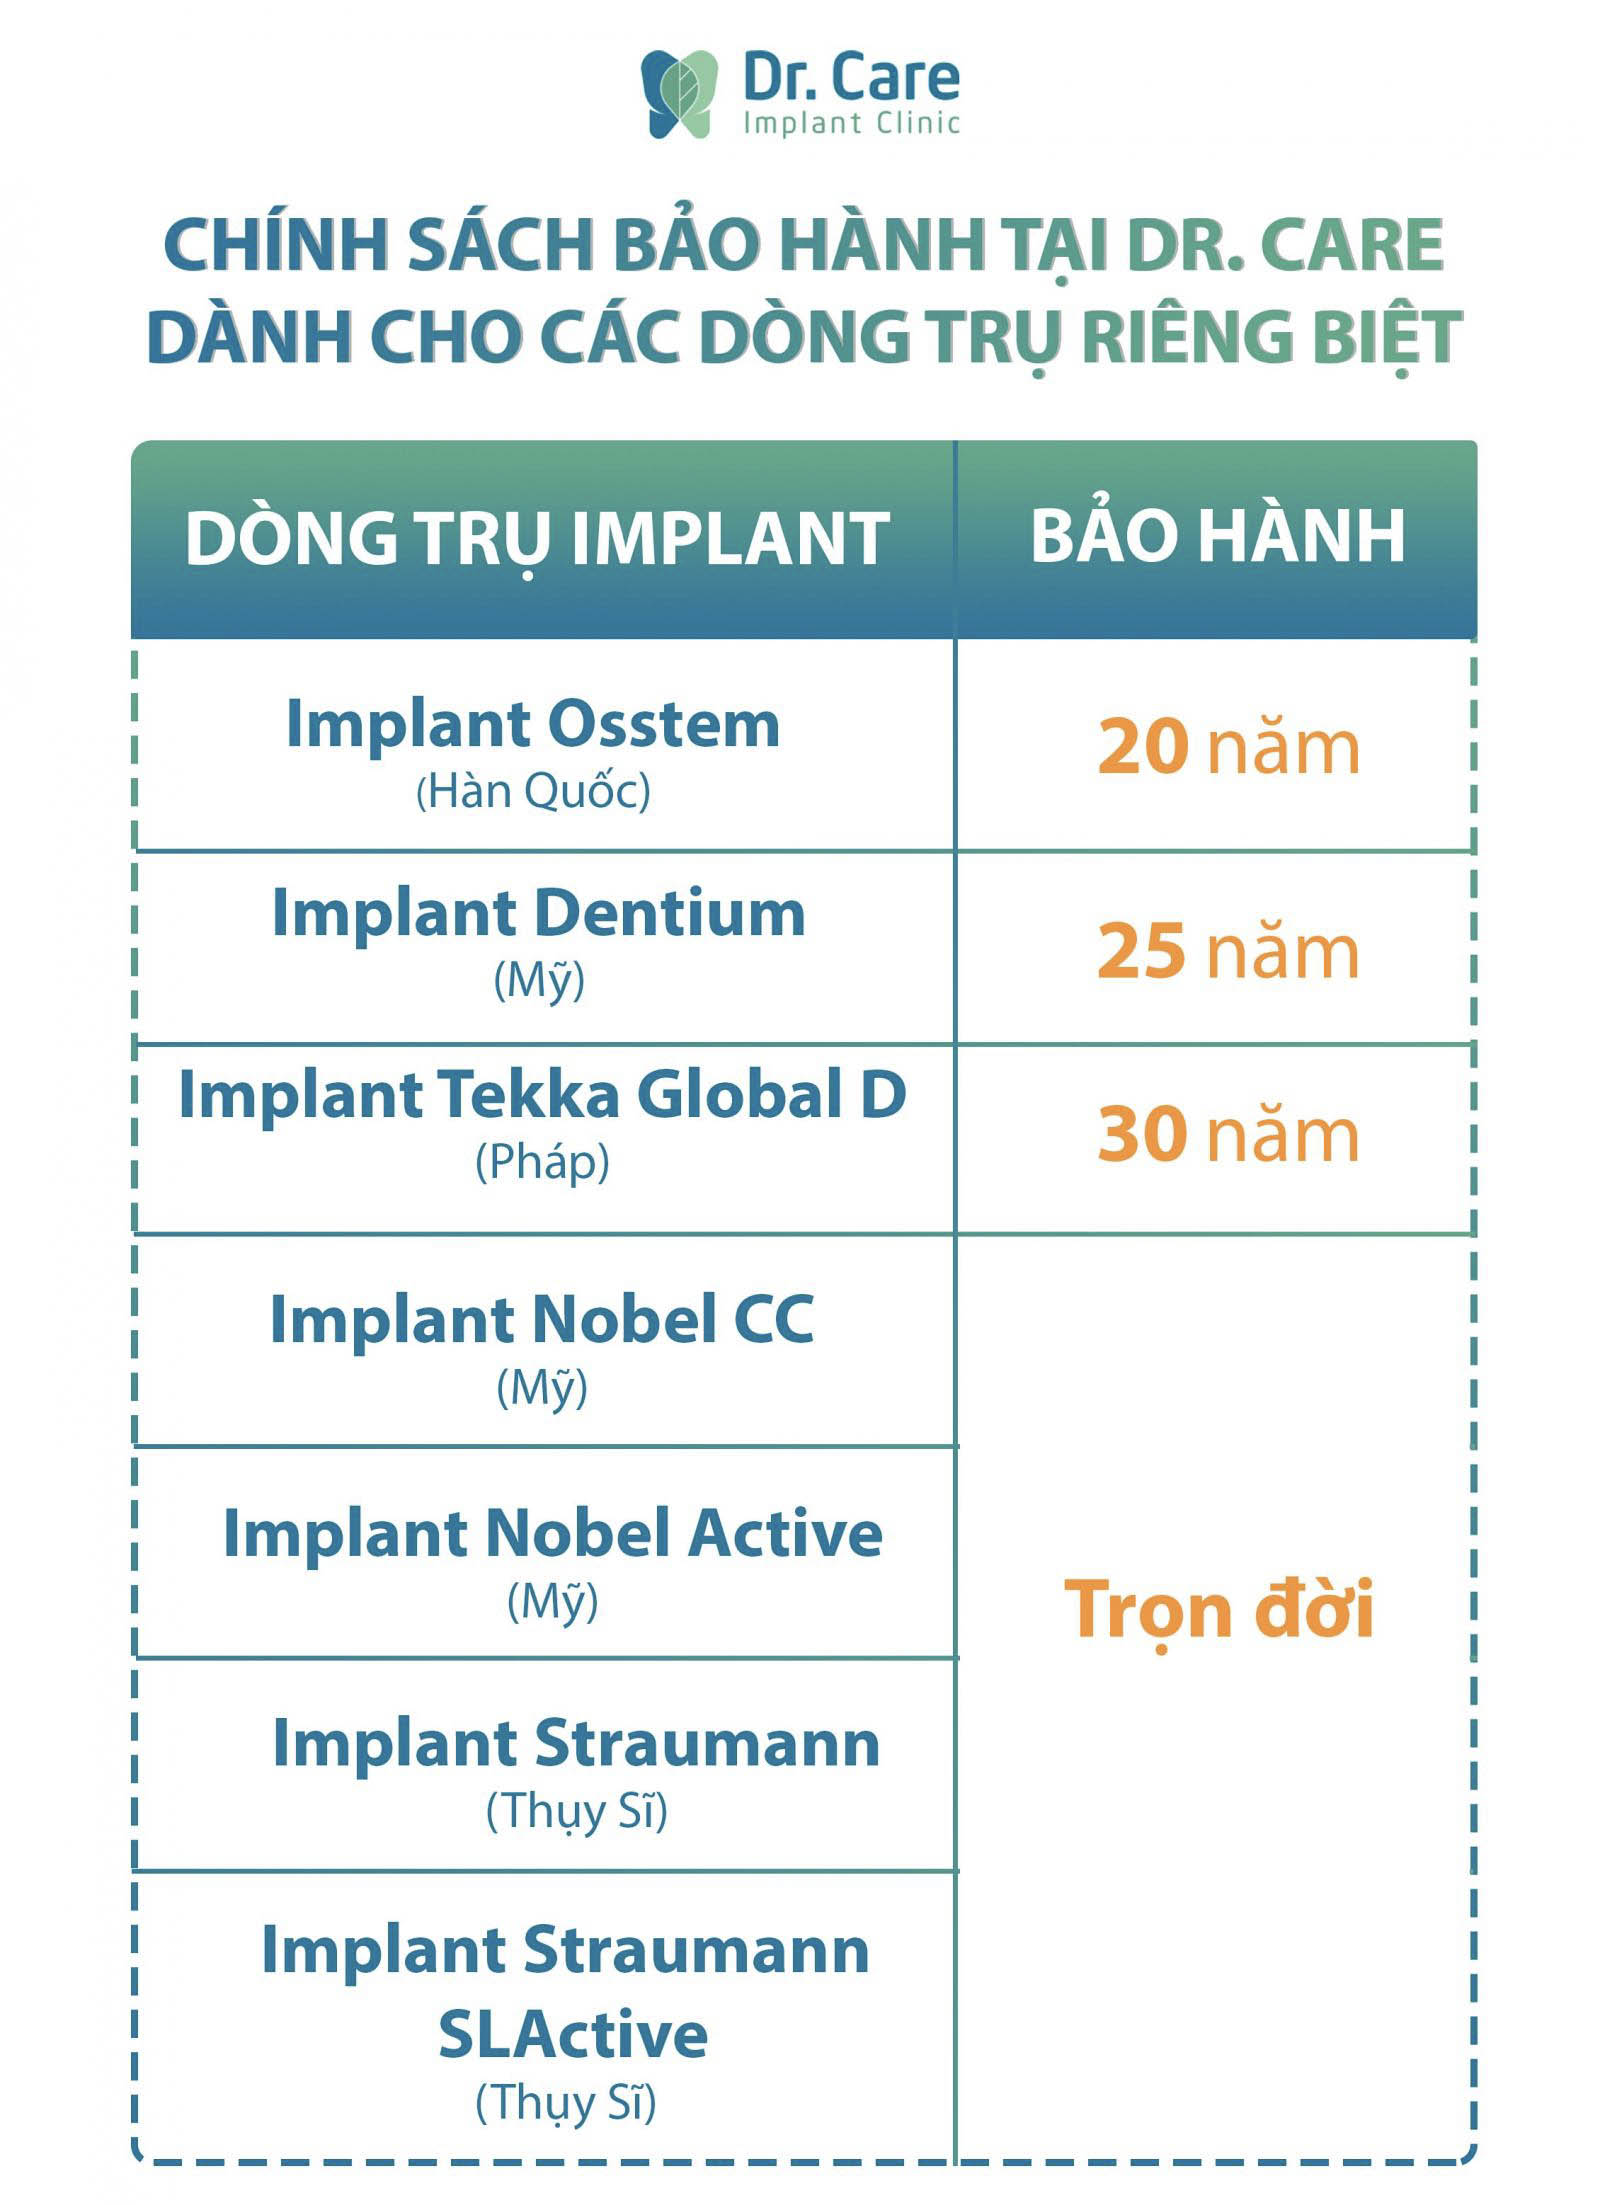 Chính sách bảo hành dòng trụ Implant tại Dr. Care - Implant Clinic